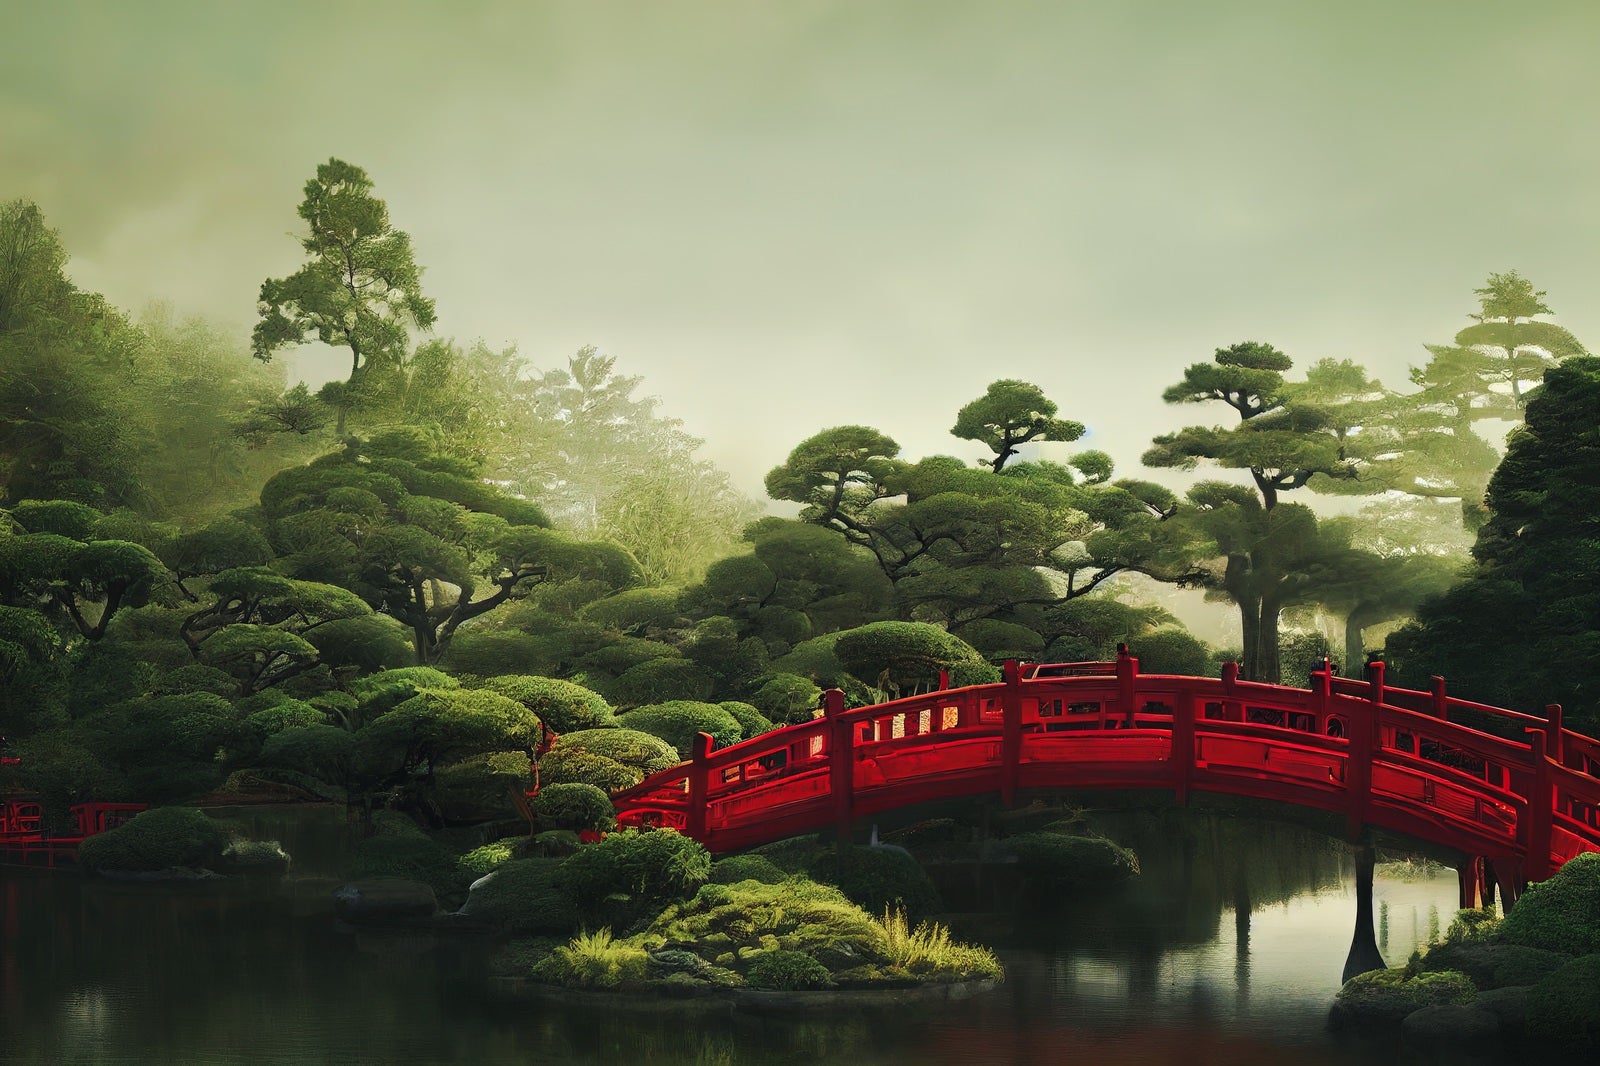 「池泉庭園に架かる太鼓橋」の写真